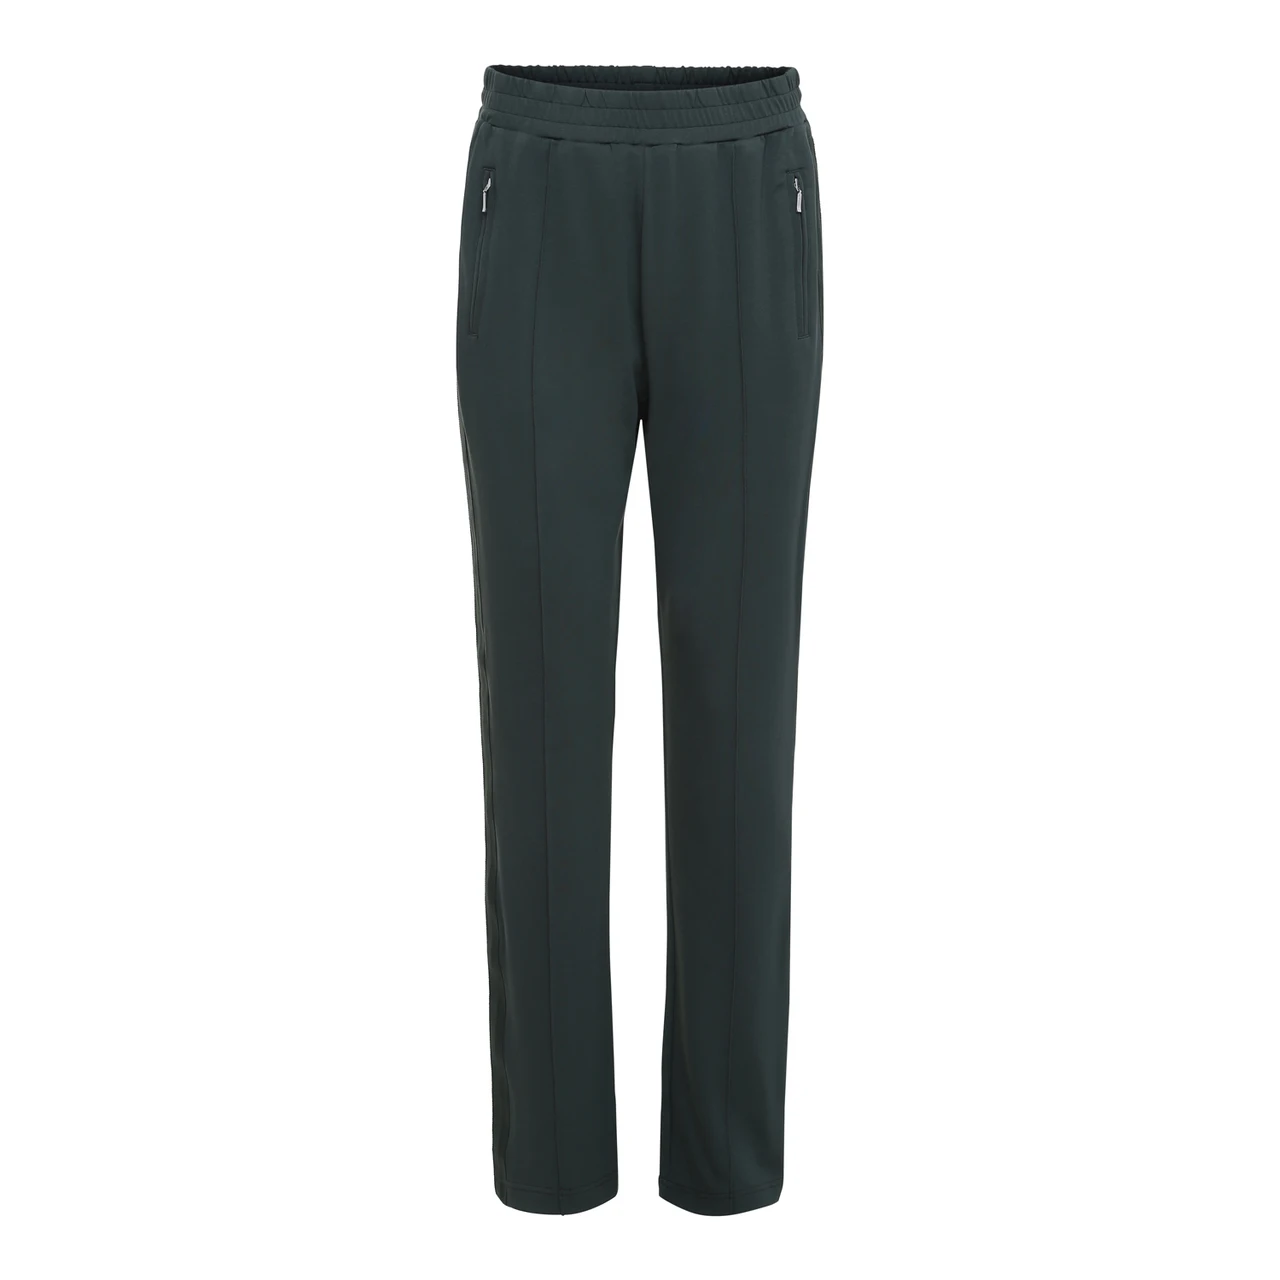 Mali Bukser i grøn fra Custommade - NYHED - Køb dine bukser her!